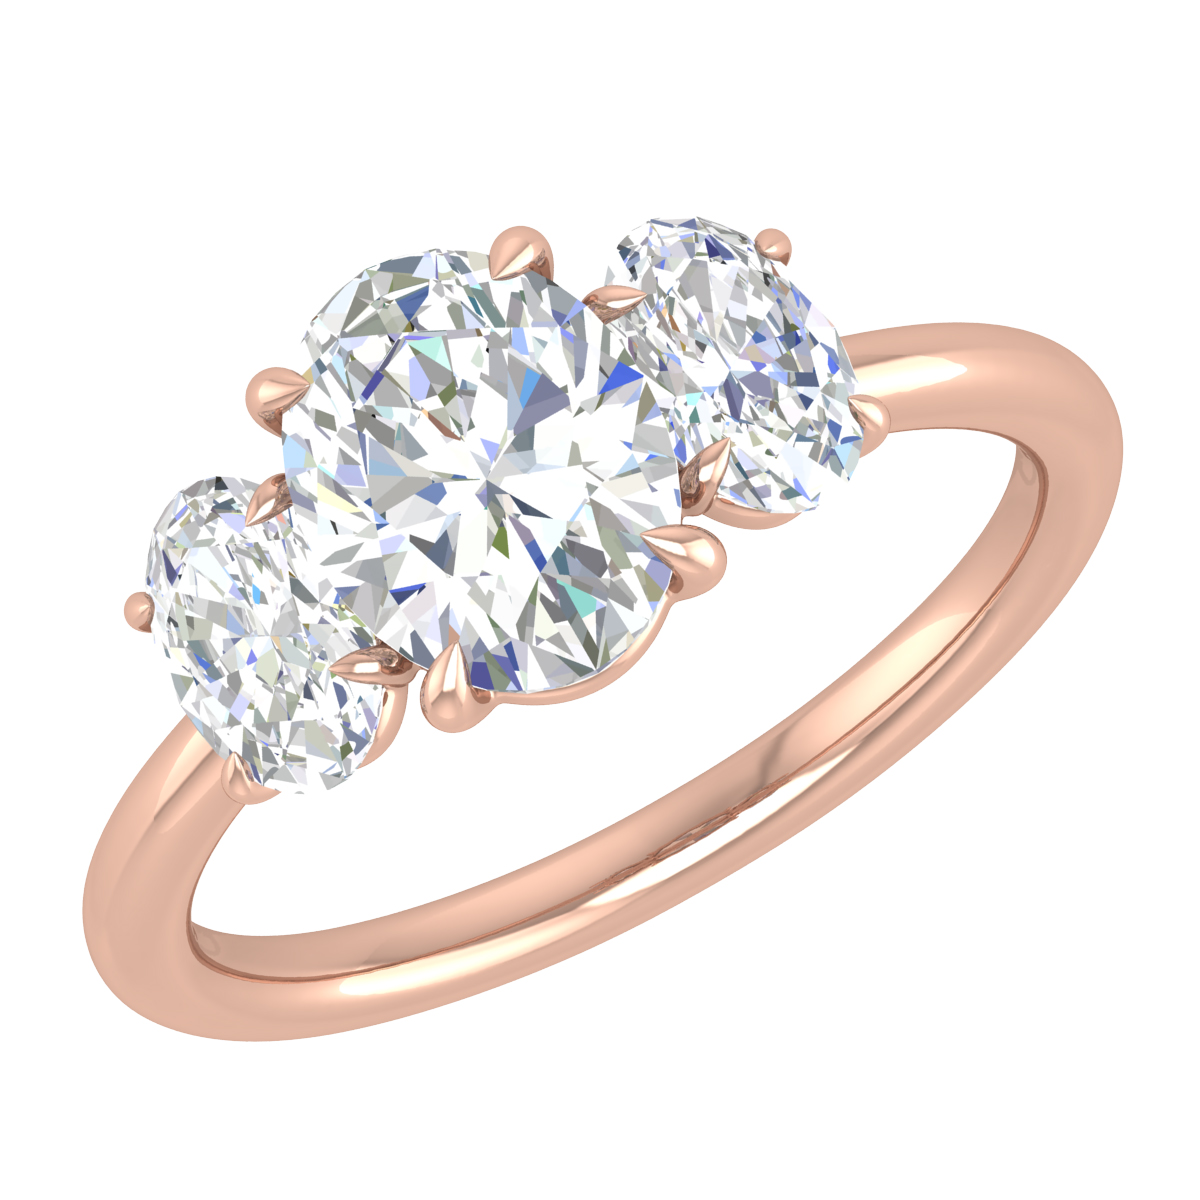 Rose Gold & Diamond Engagement Rings For Women Online